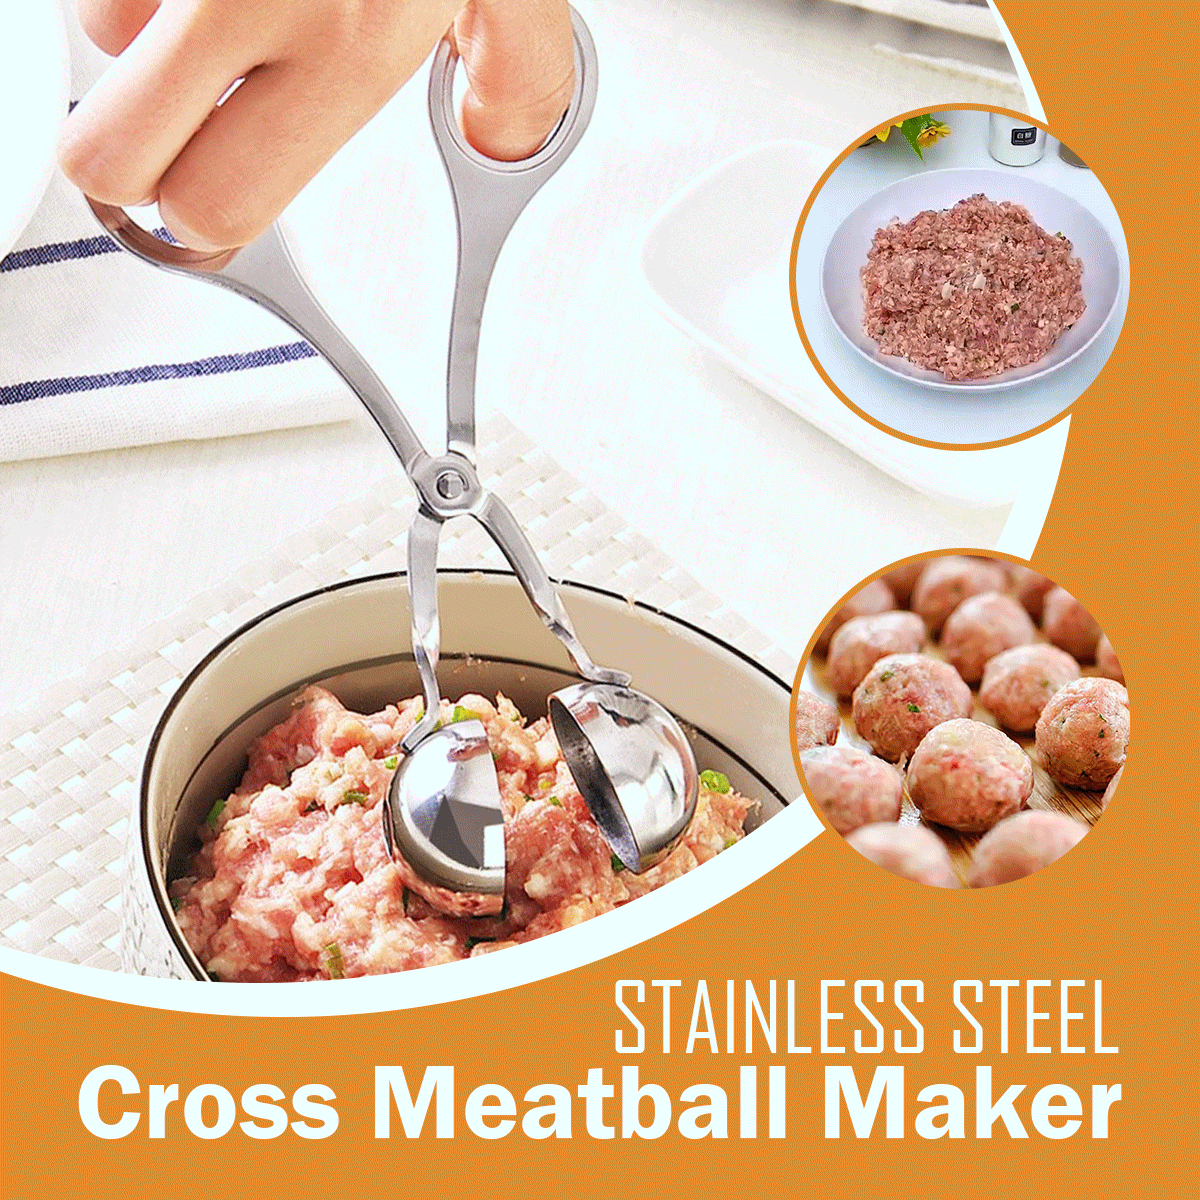 Stainless Steel Cross Meatball Maker